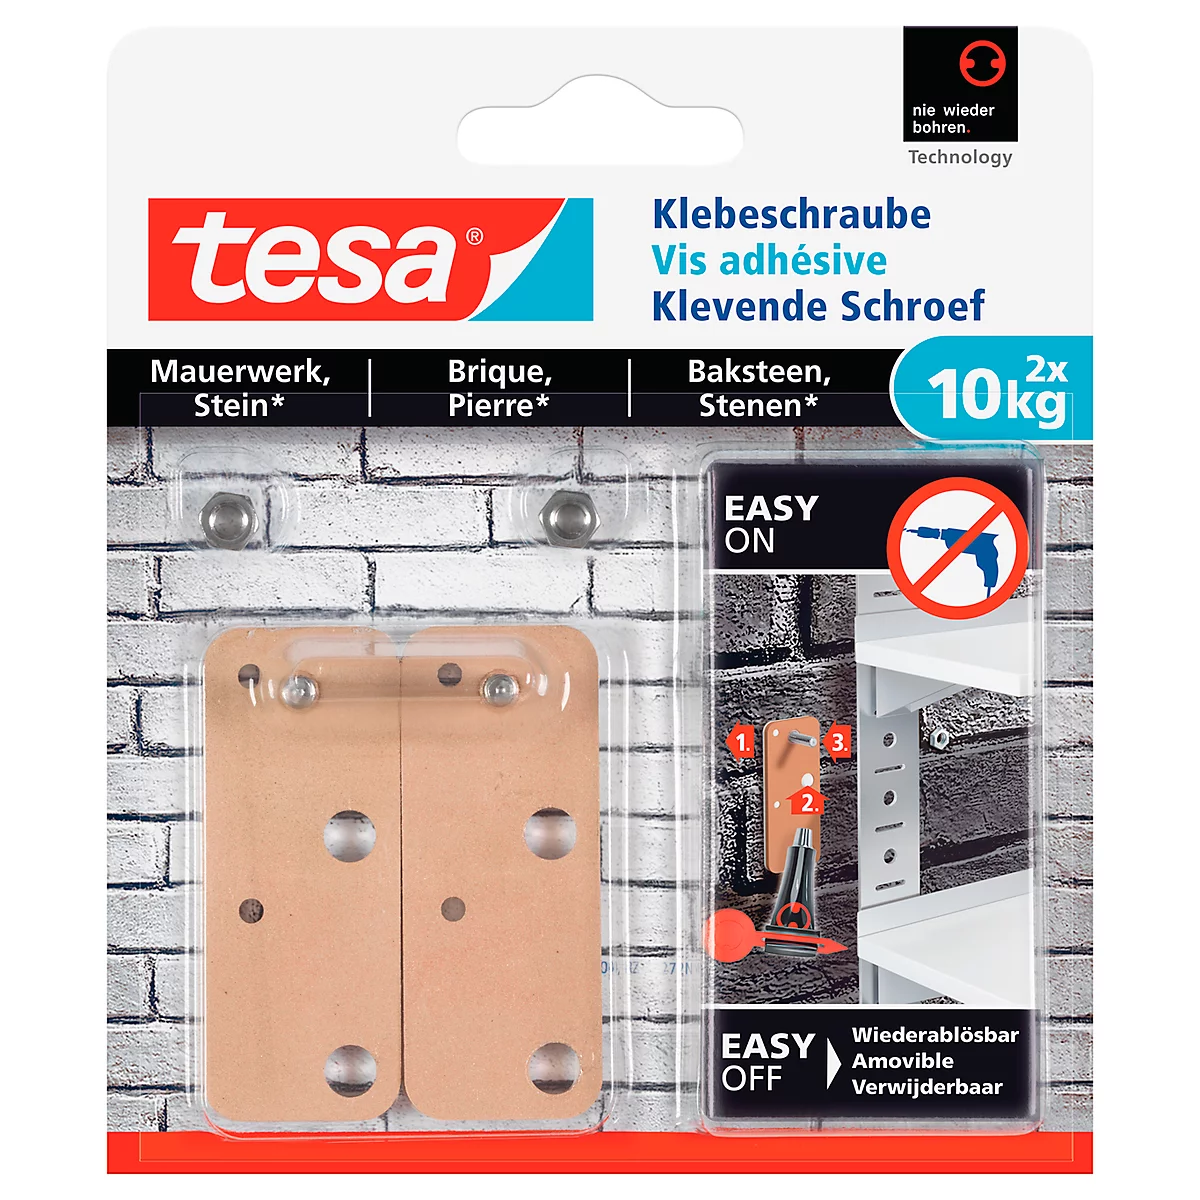 Klebeschraube tesa®, für Mauerwerk & Stein im Innen- & Außenbereich, Haftkraft bis 10 kg, ablösbar, viereckig, 2 Stück